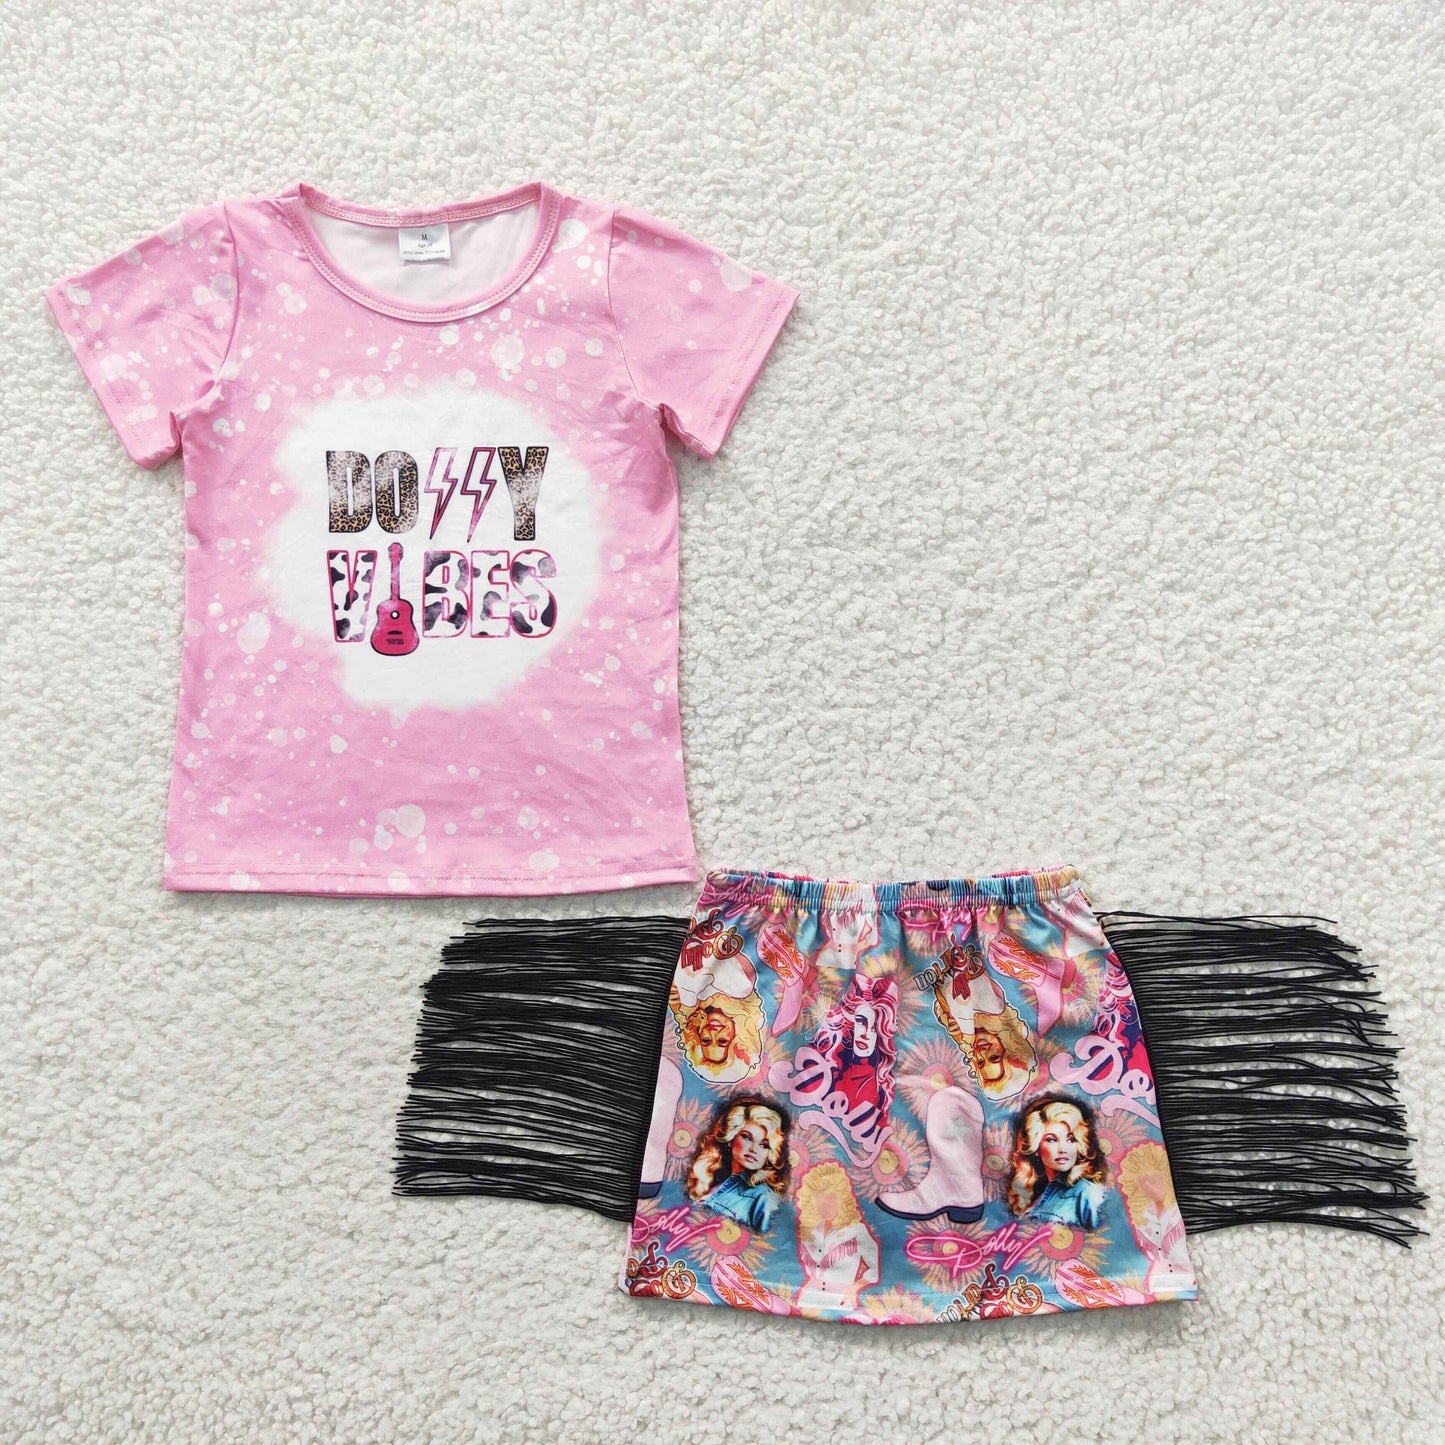 Girls pink singer print tassels skirt summer outfits GSD0317